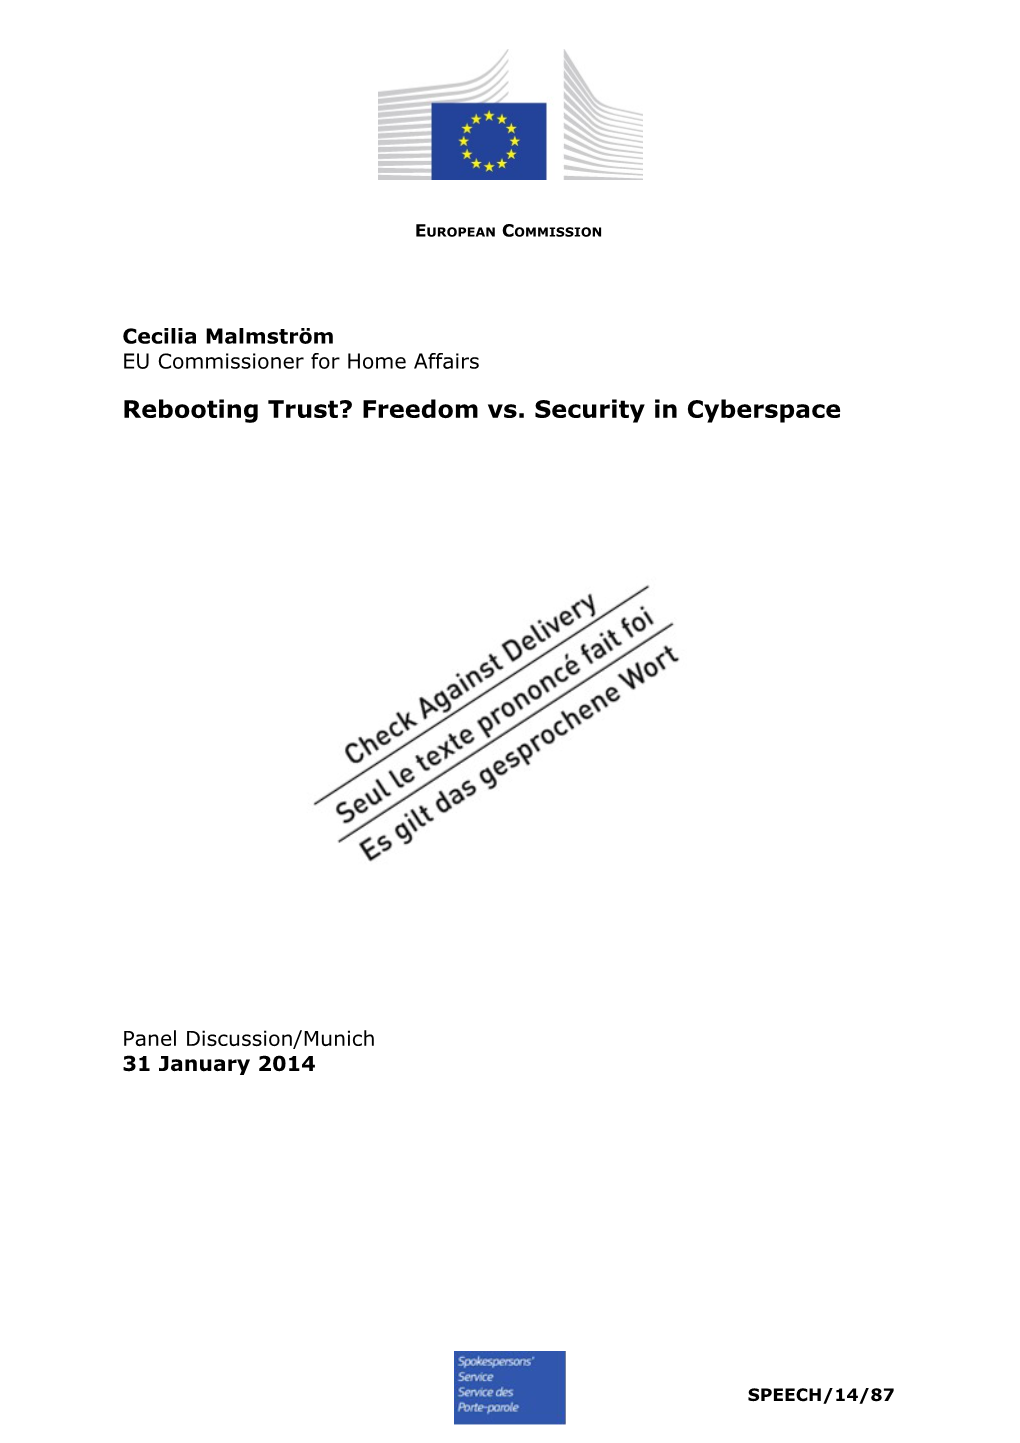 Rebooting Trust? Freedom Vs. Security in Cyberspace